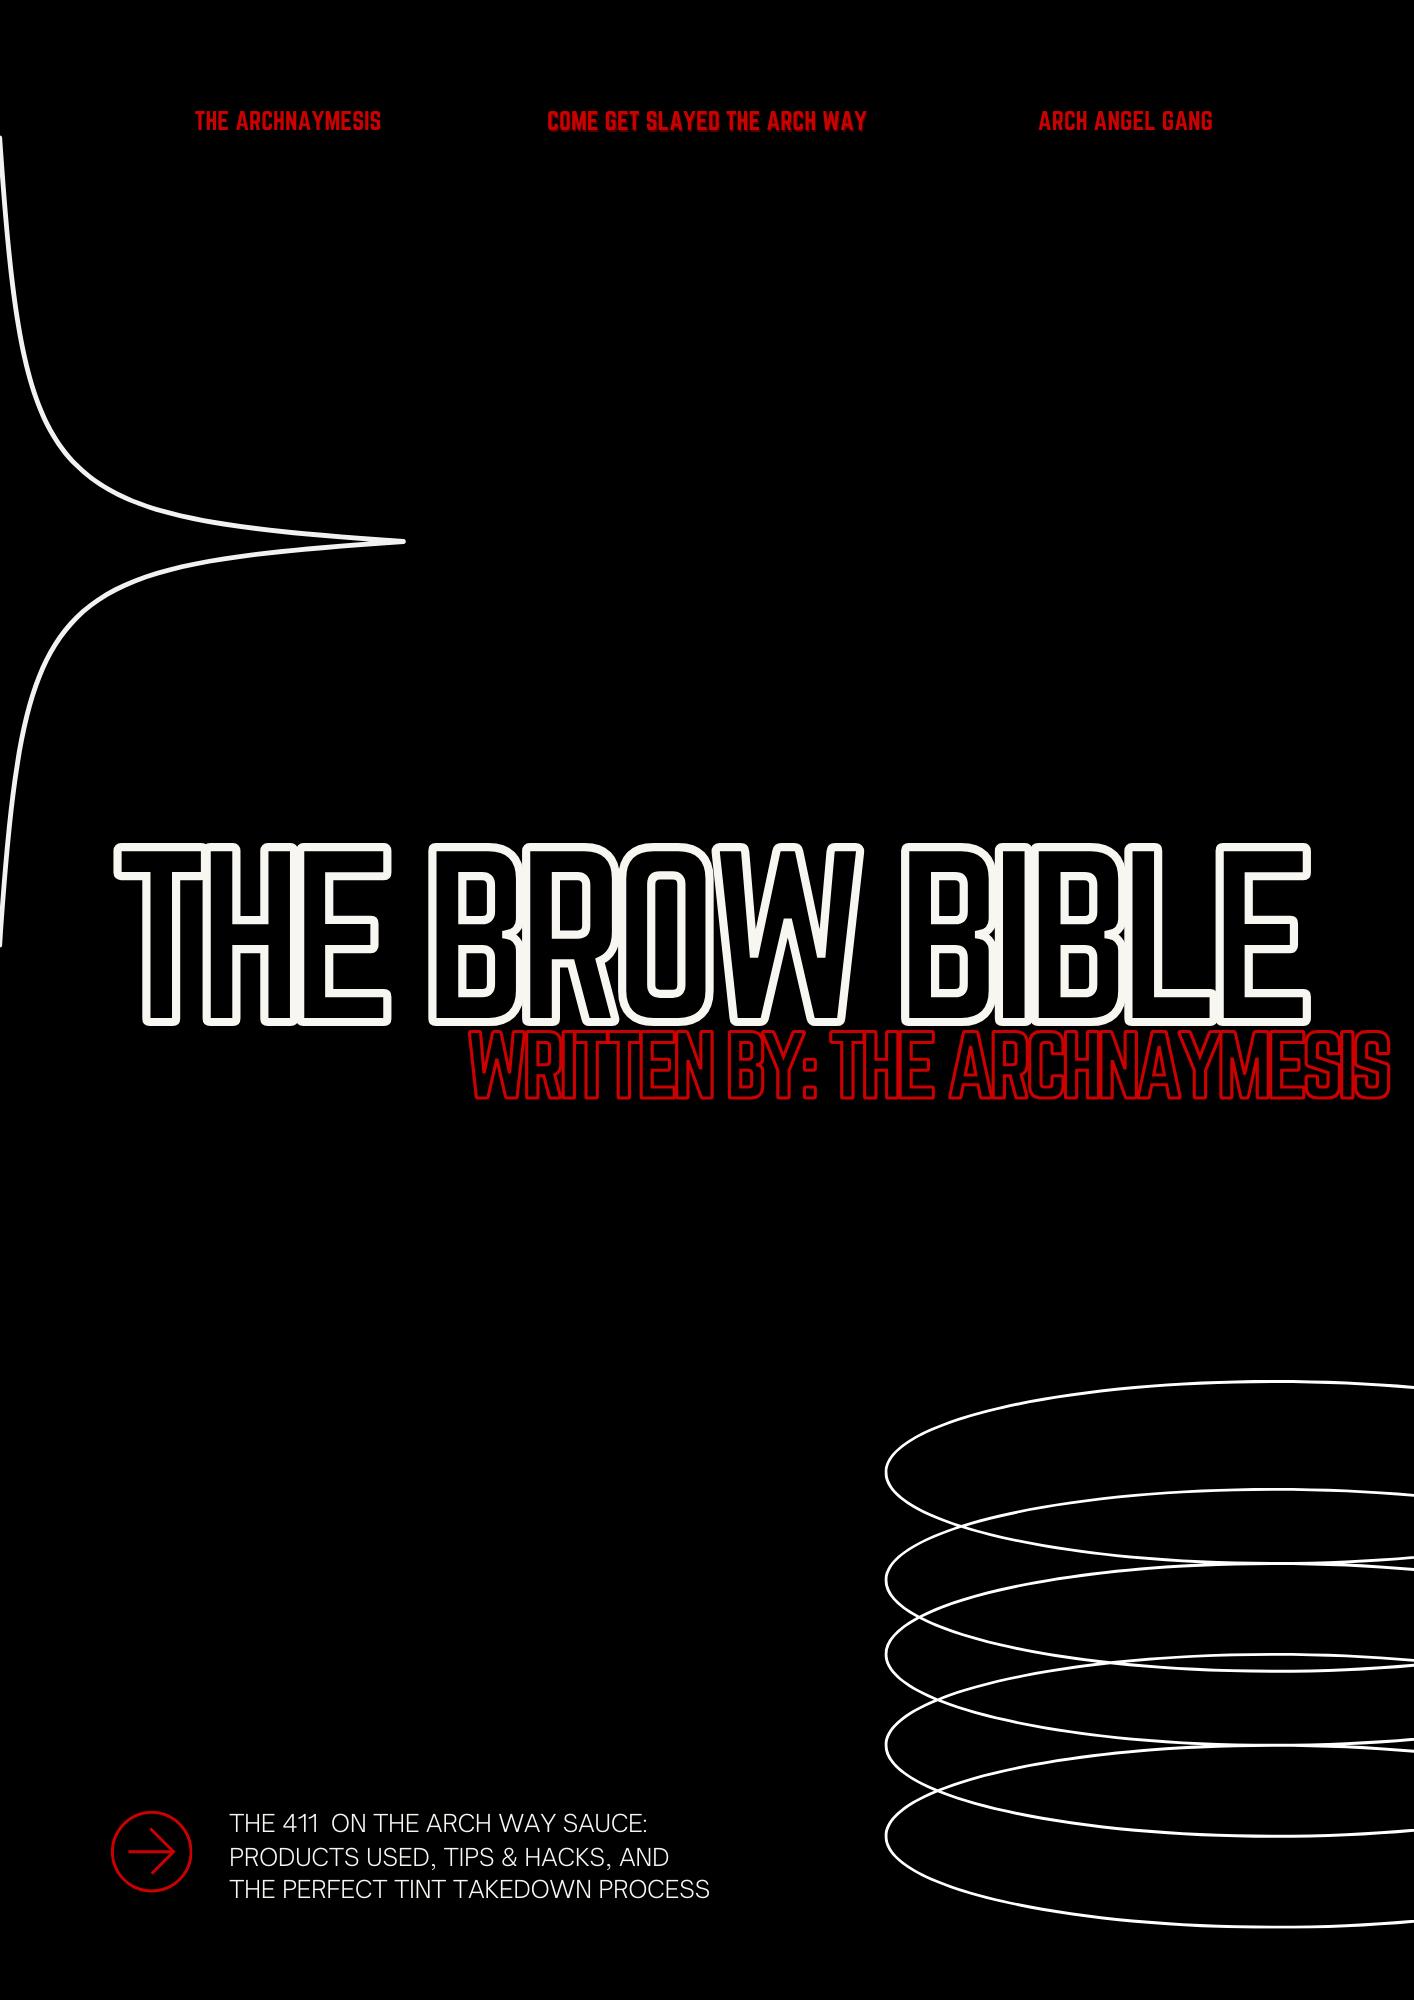 THE BROW BIBLE